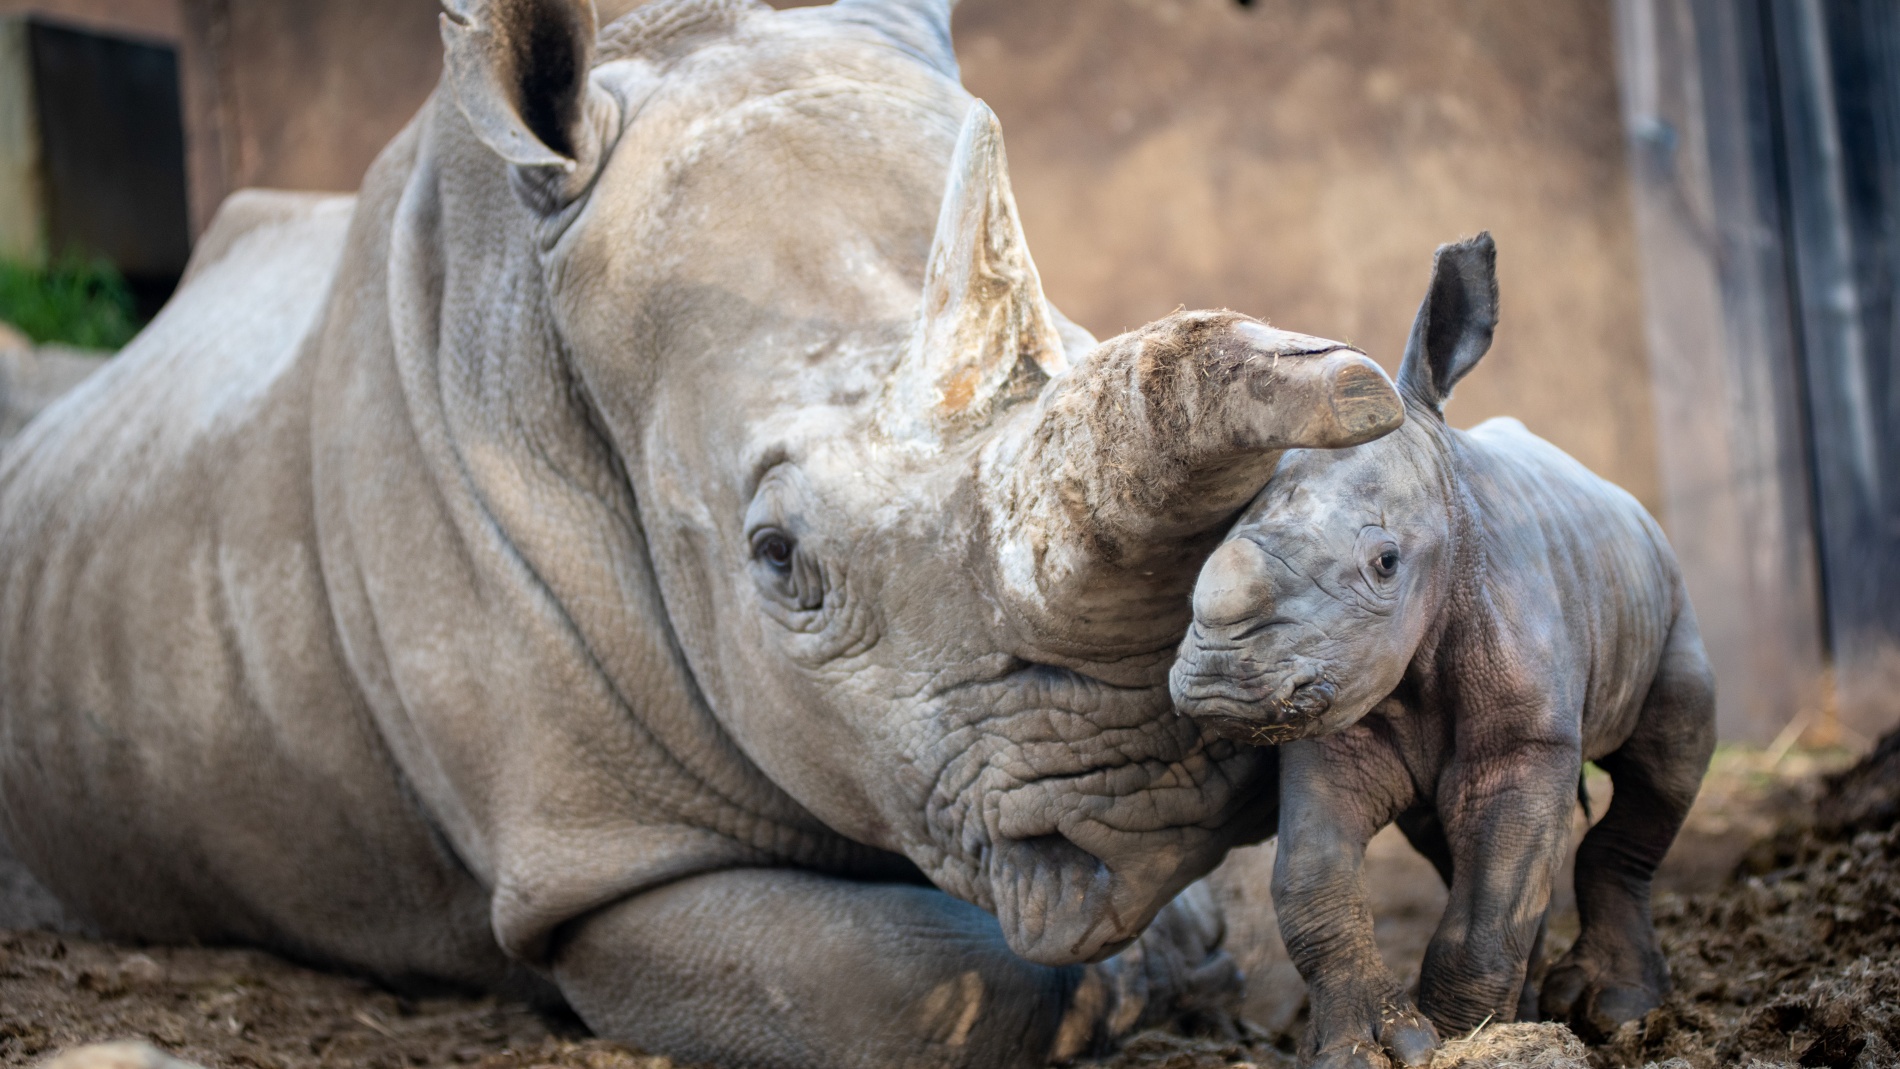 safari west rhino baby